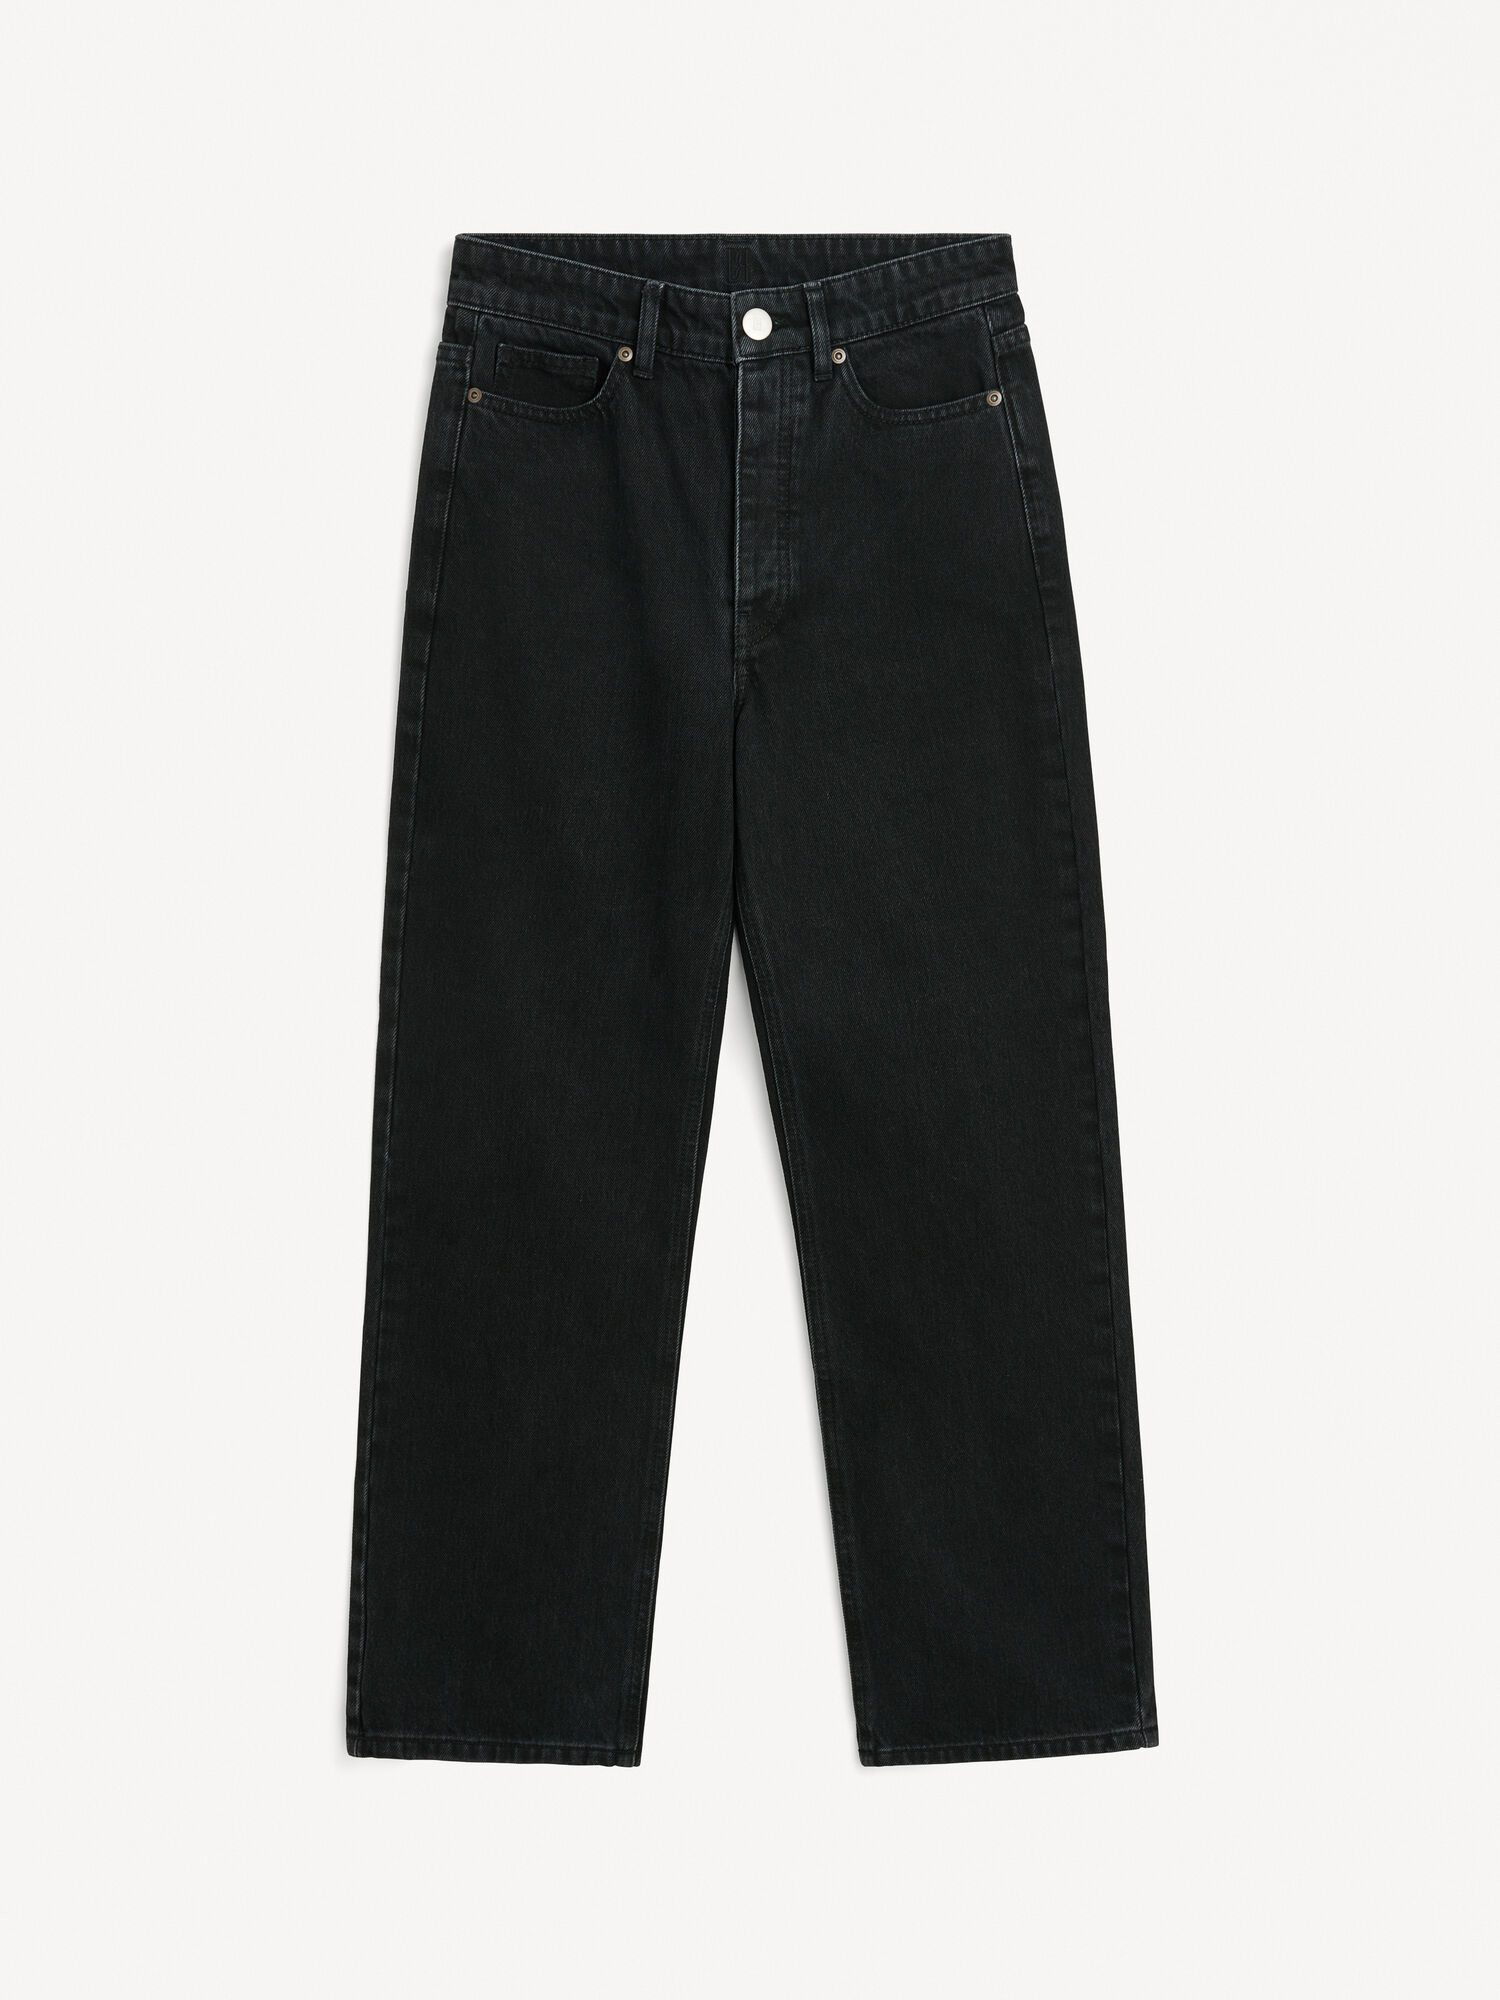 Milium organic cotton jeans